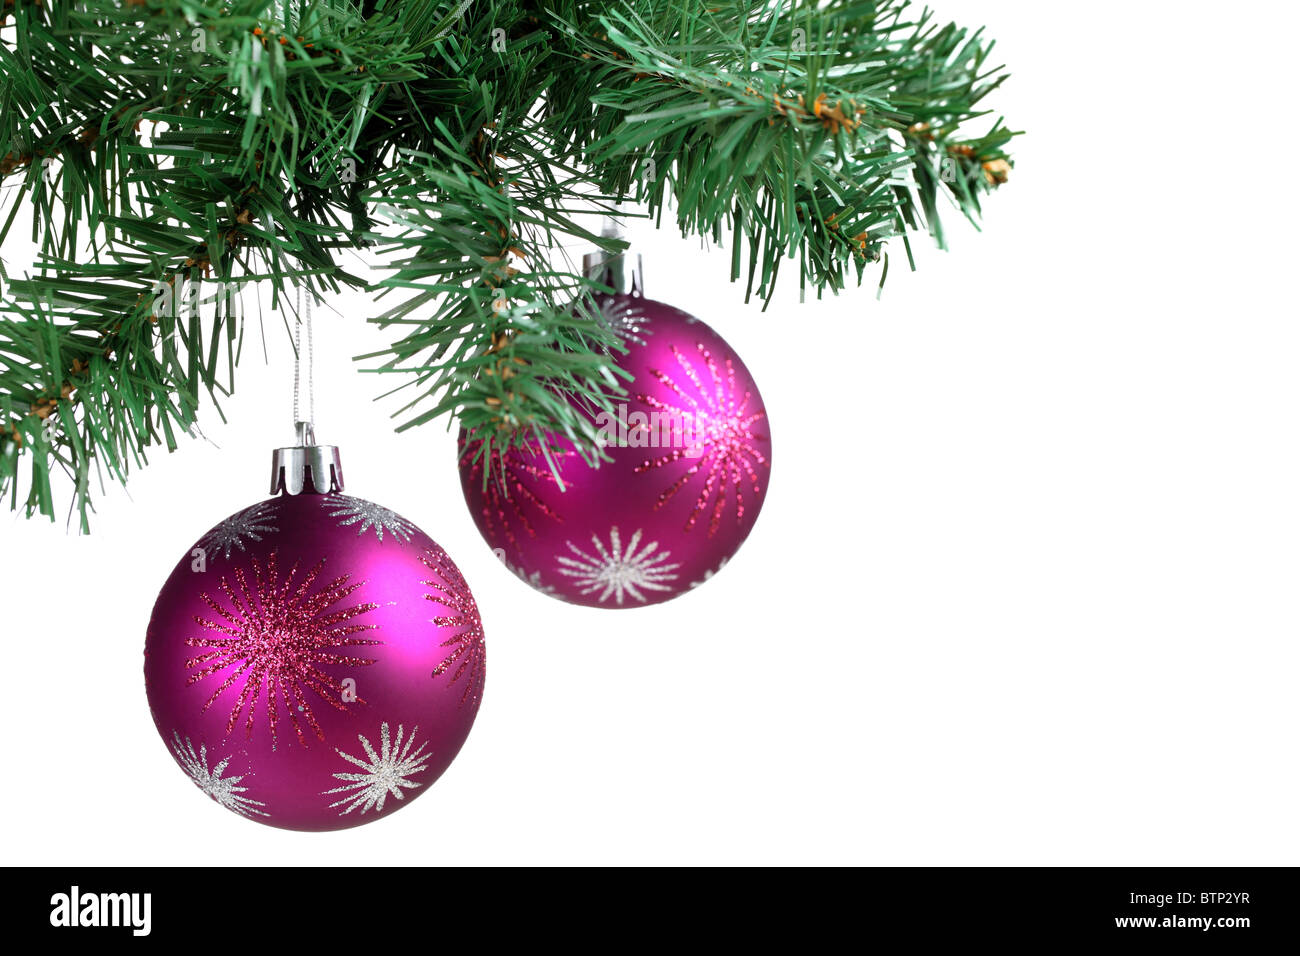 Bola de Navidad y abeto verde rama. Foto de stock